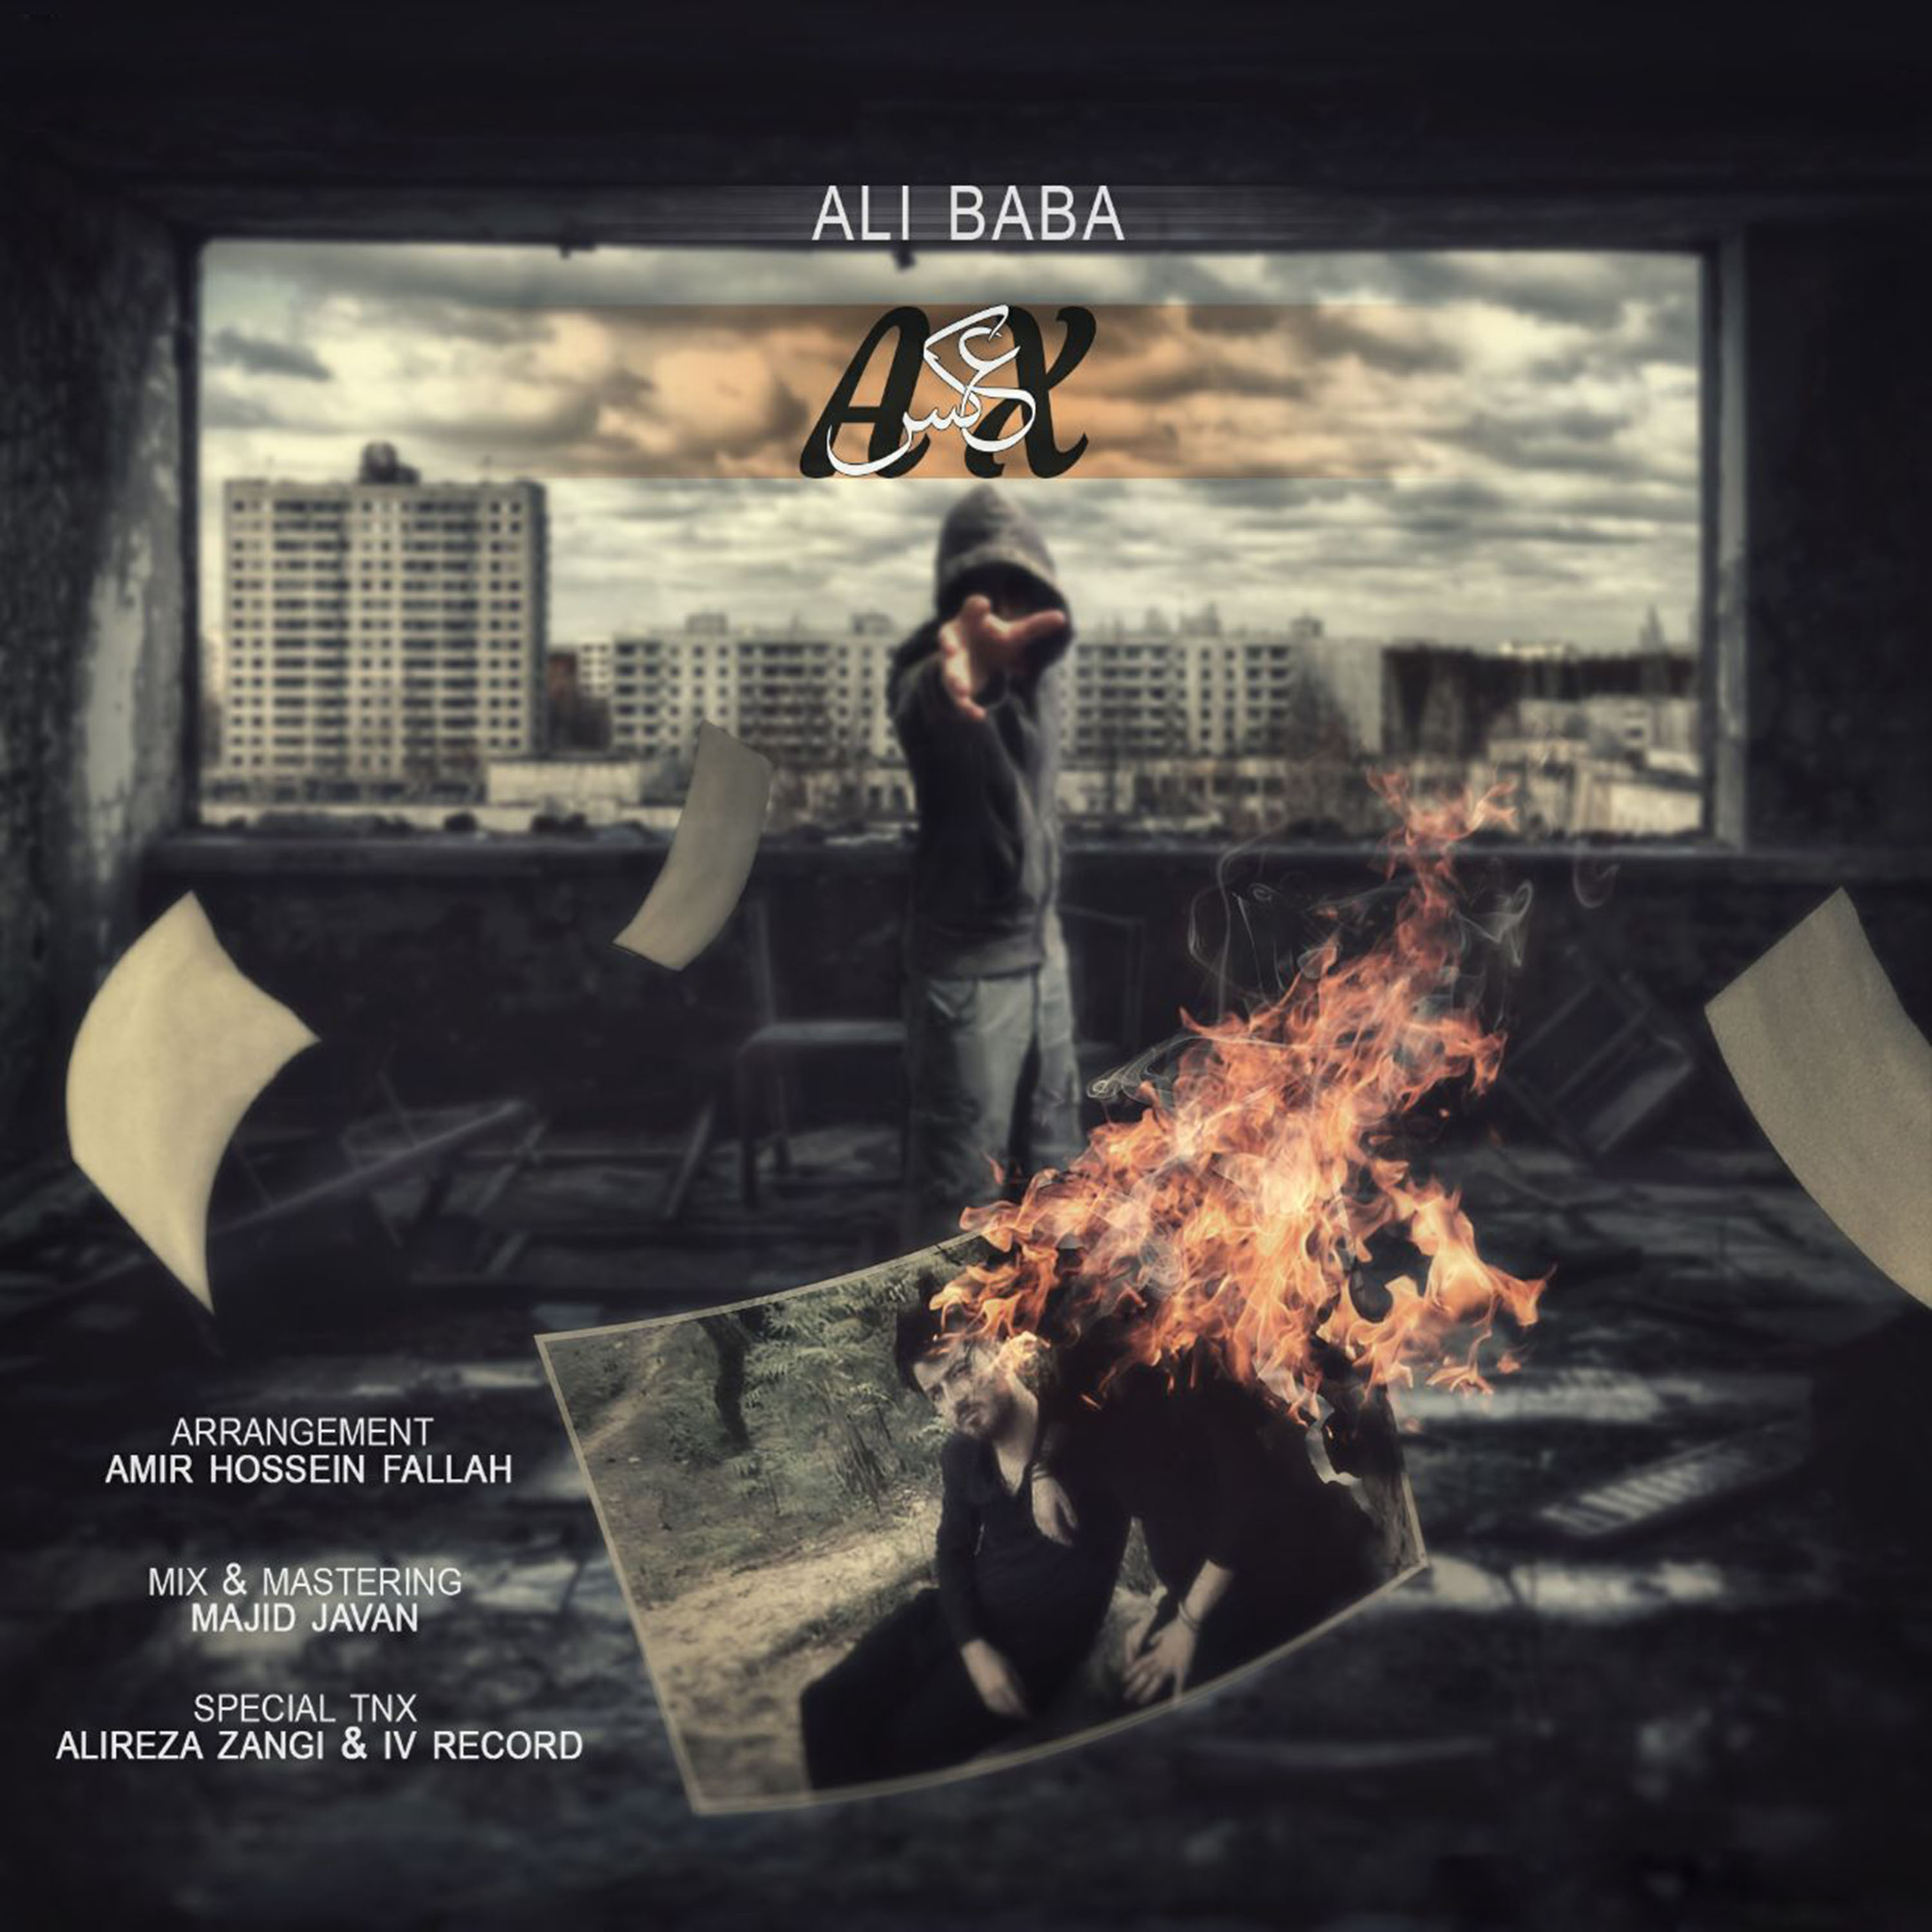  دانلود آهنگ جدید علی بابا - عکس | Download New Music By Ali Baba - Ax